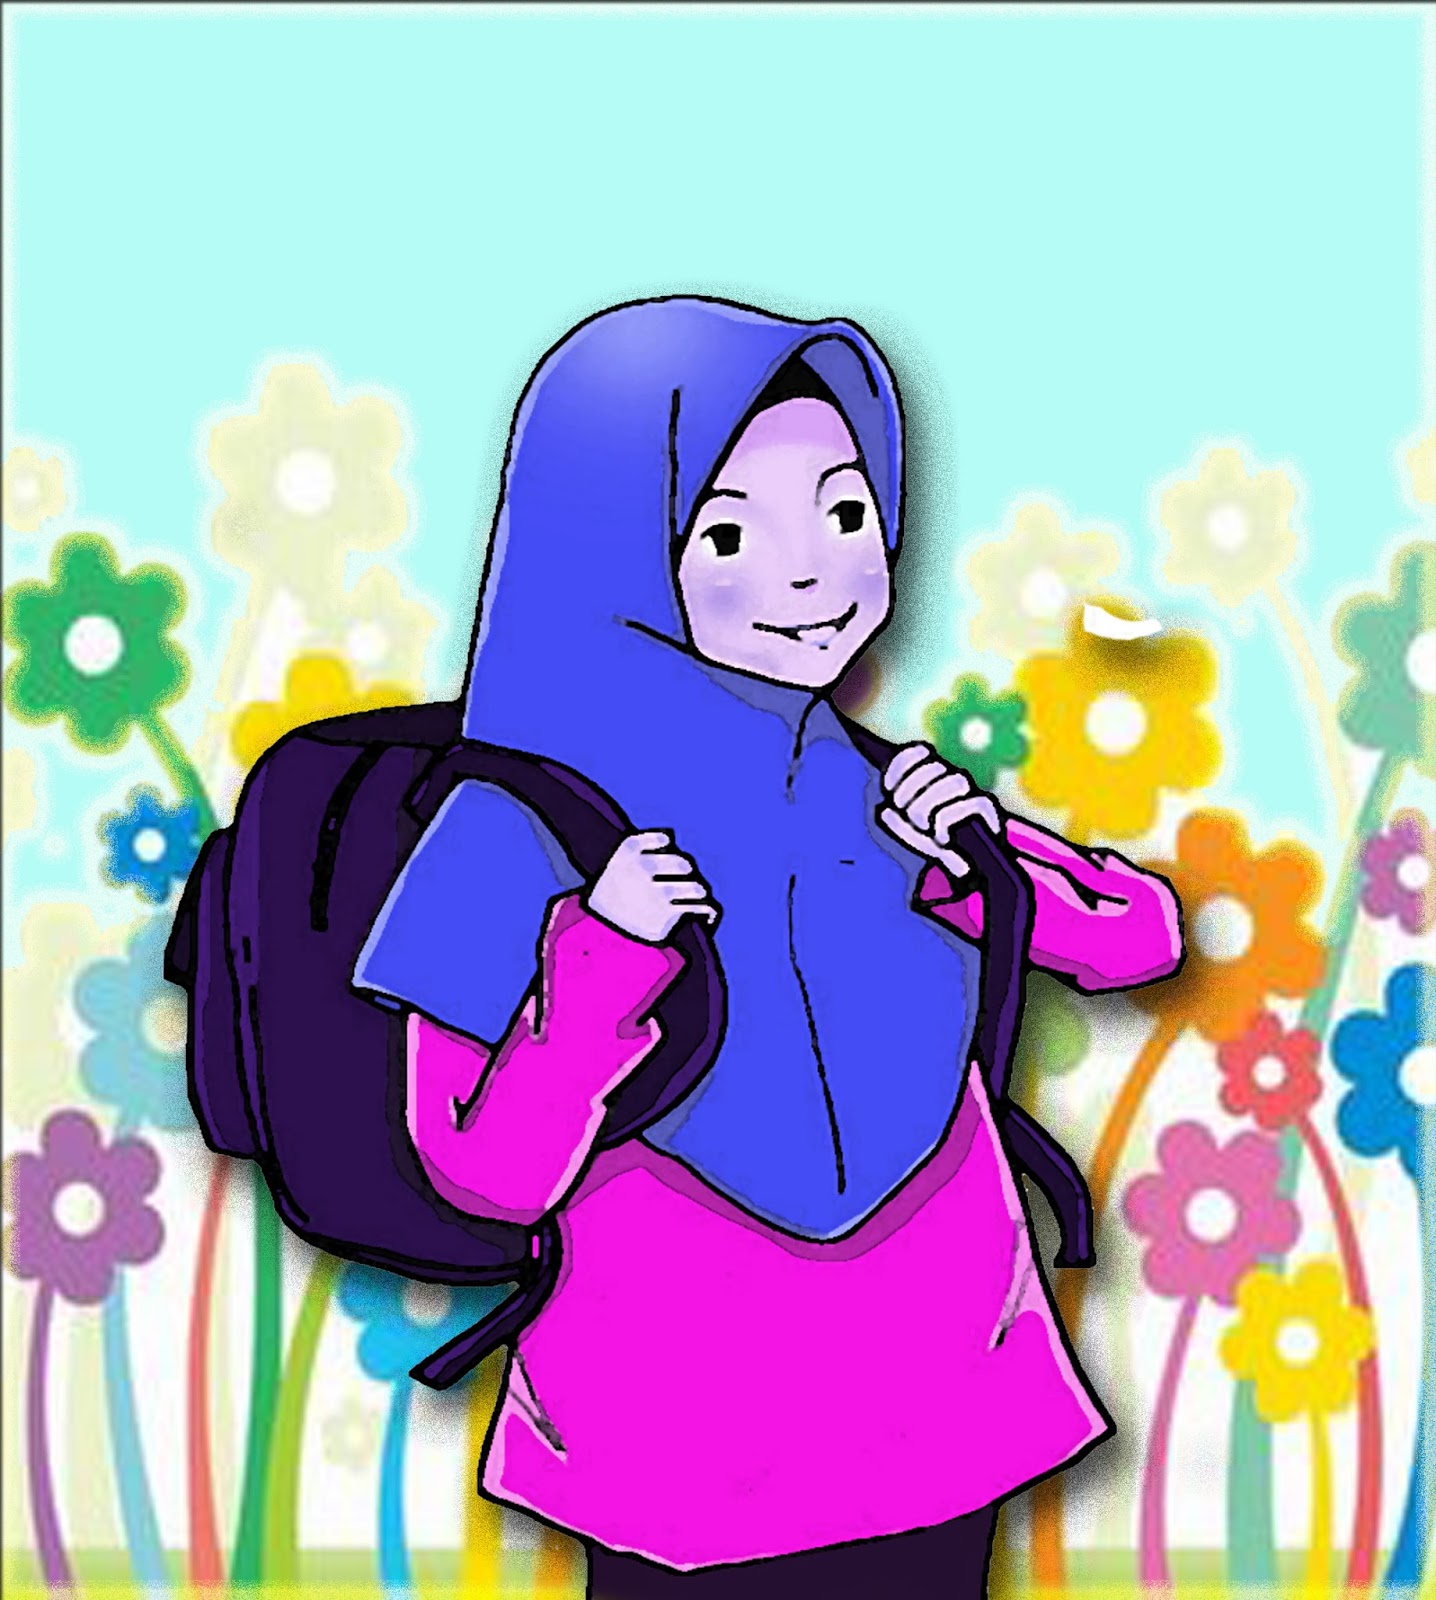 Gambar Kartun lucu | Gambar Kartun Muslim - Gambar Lucu